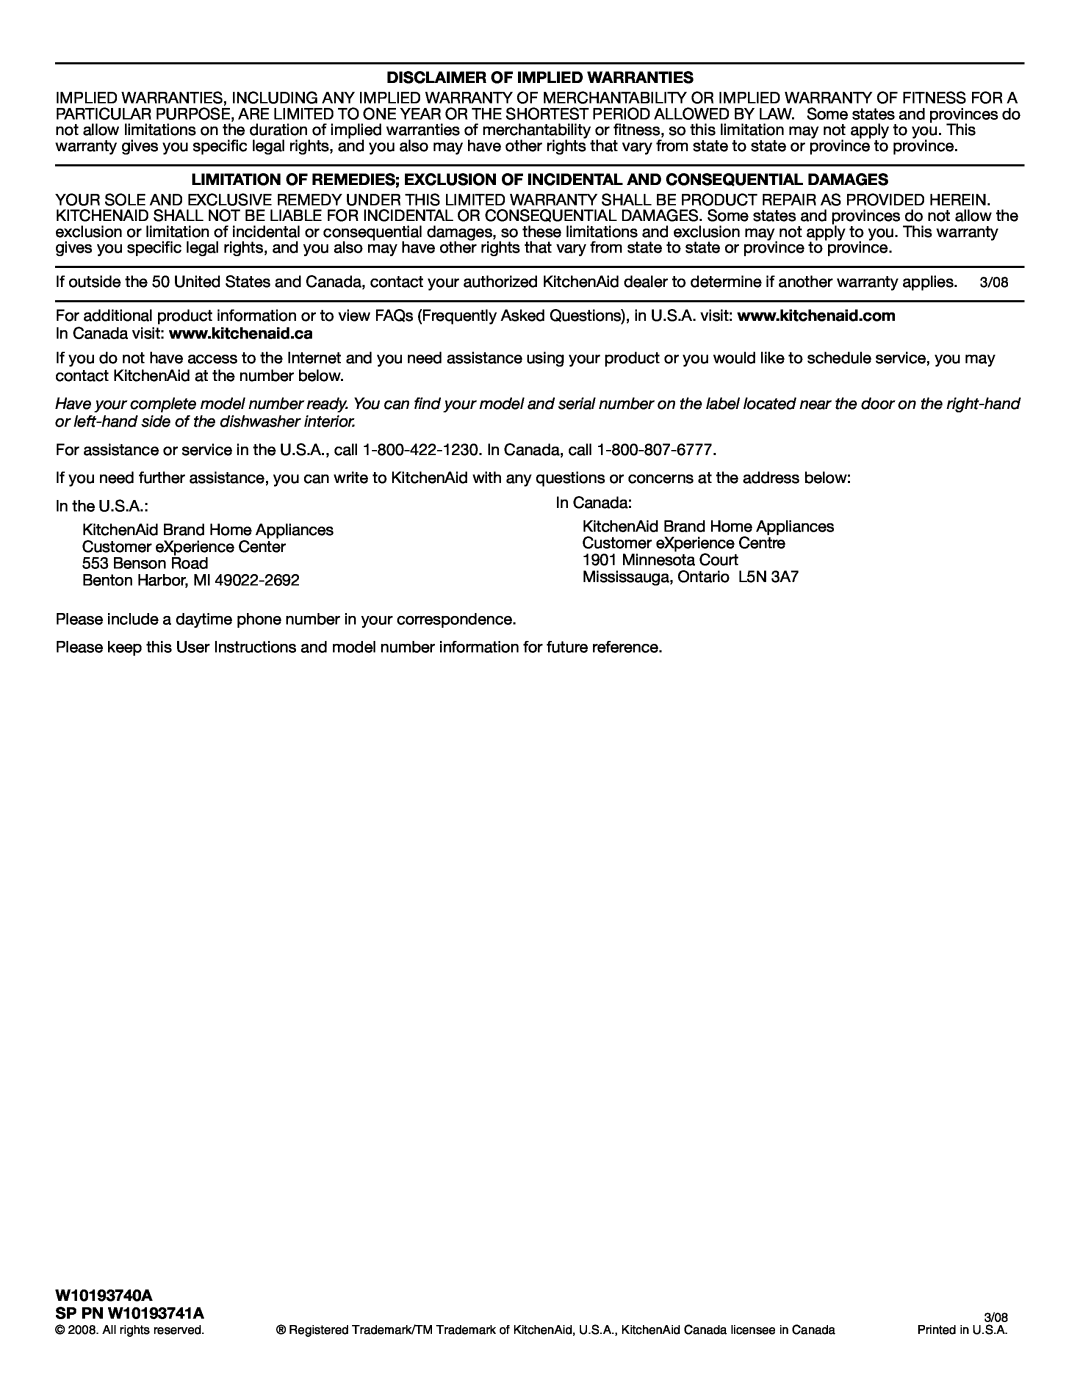 KitchenAid warranty Disclaimer Of Implied Warranties, W10193740A, SP PN W10193741A 